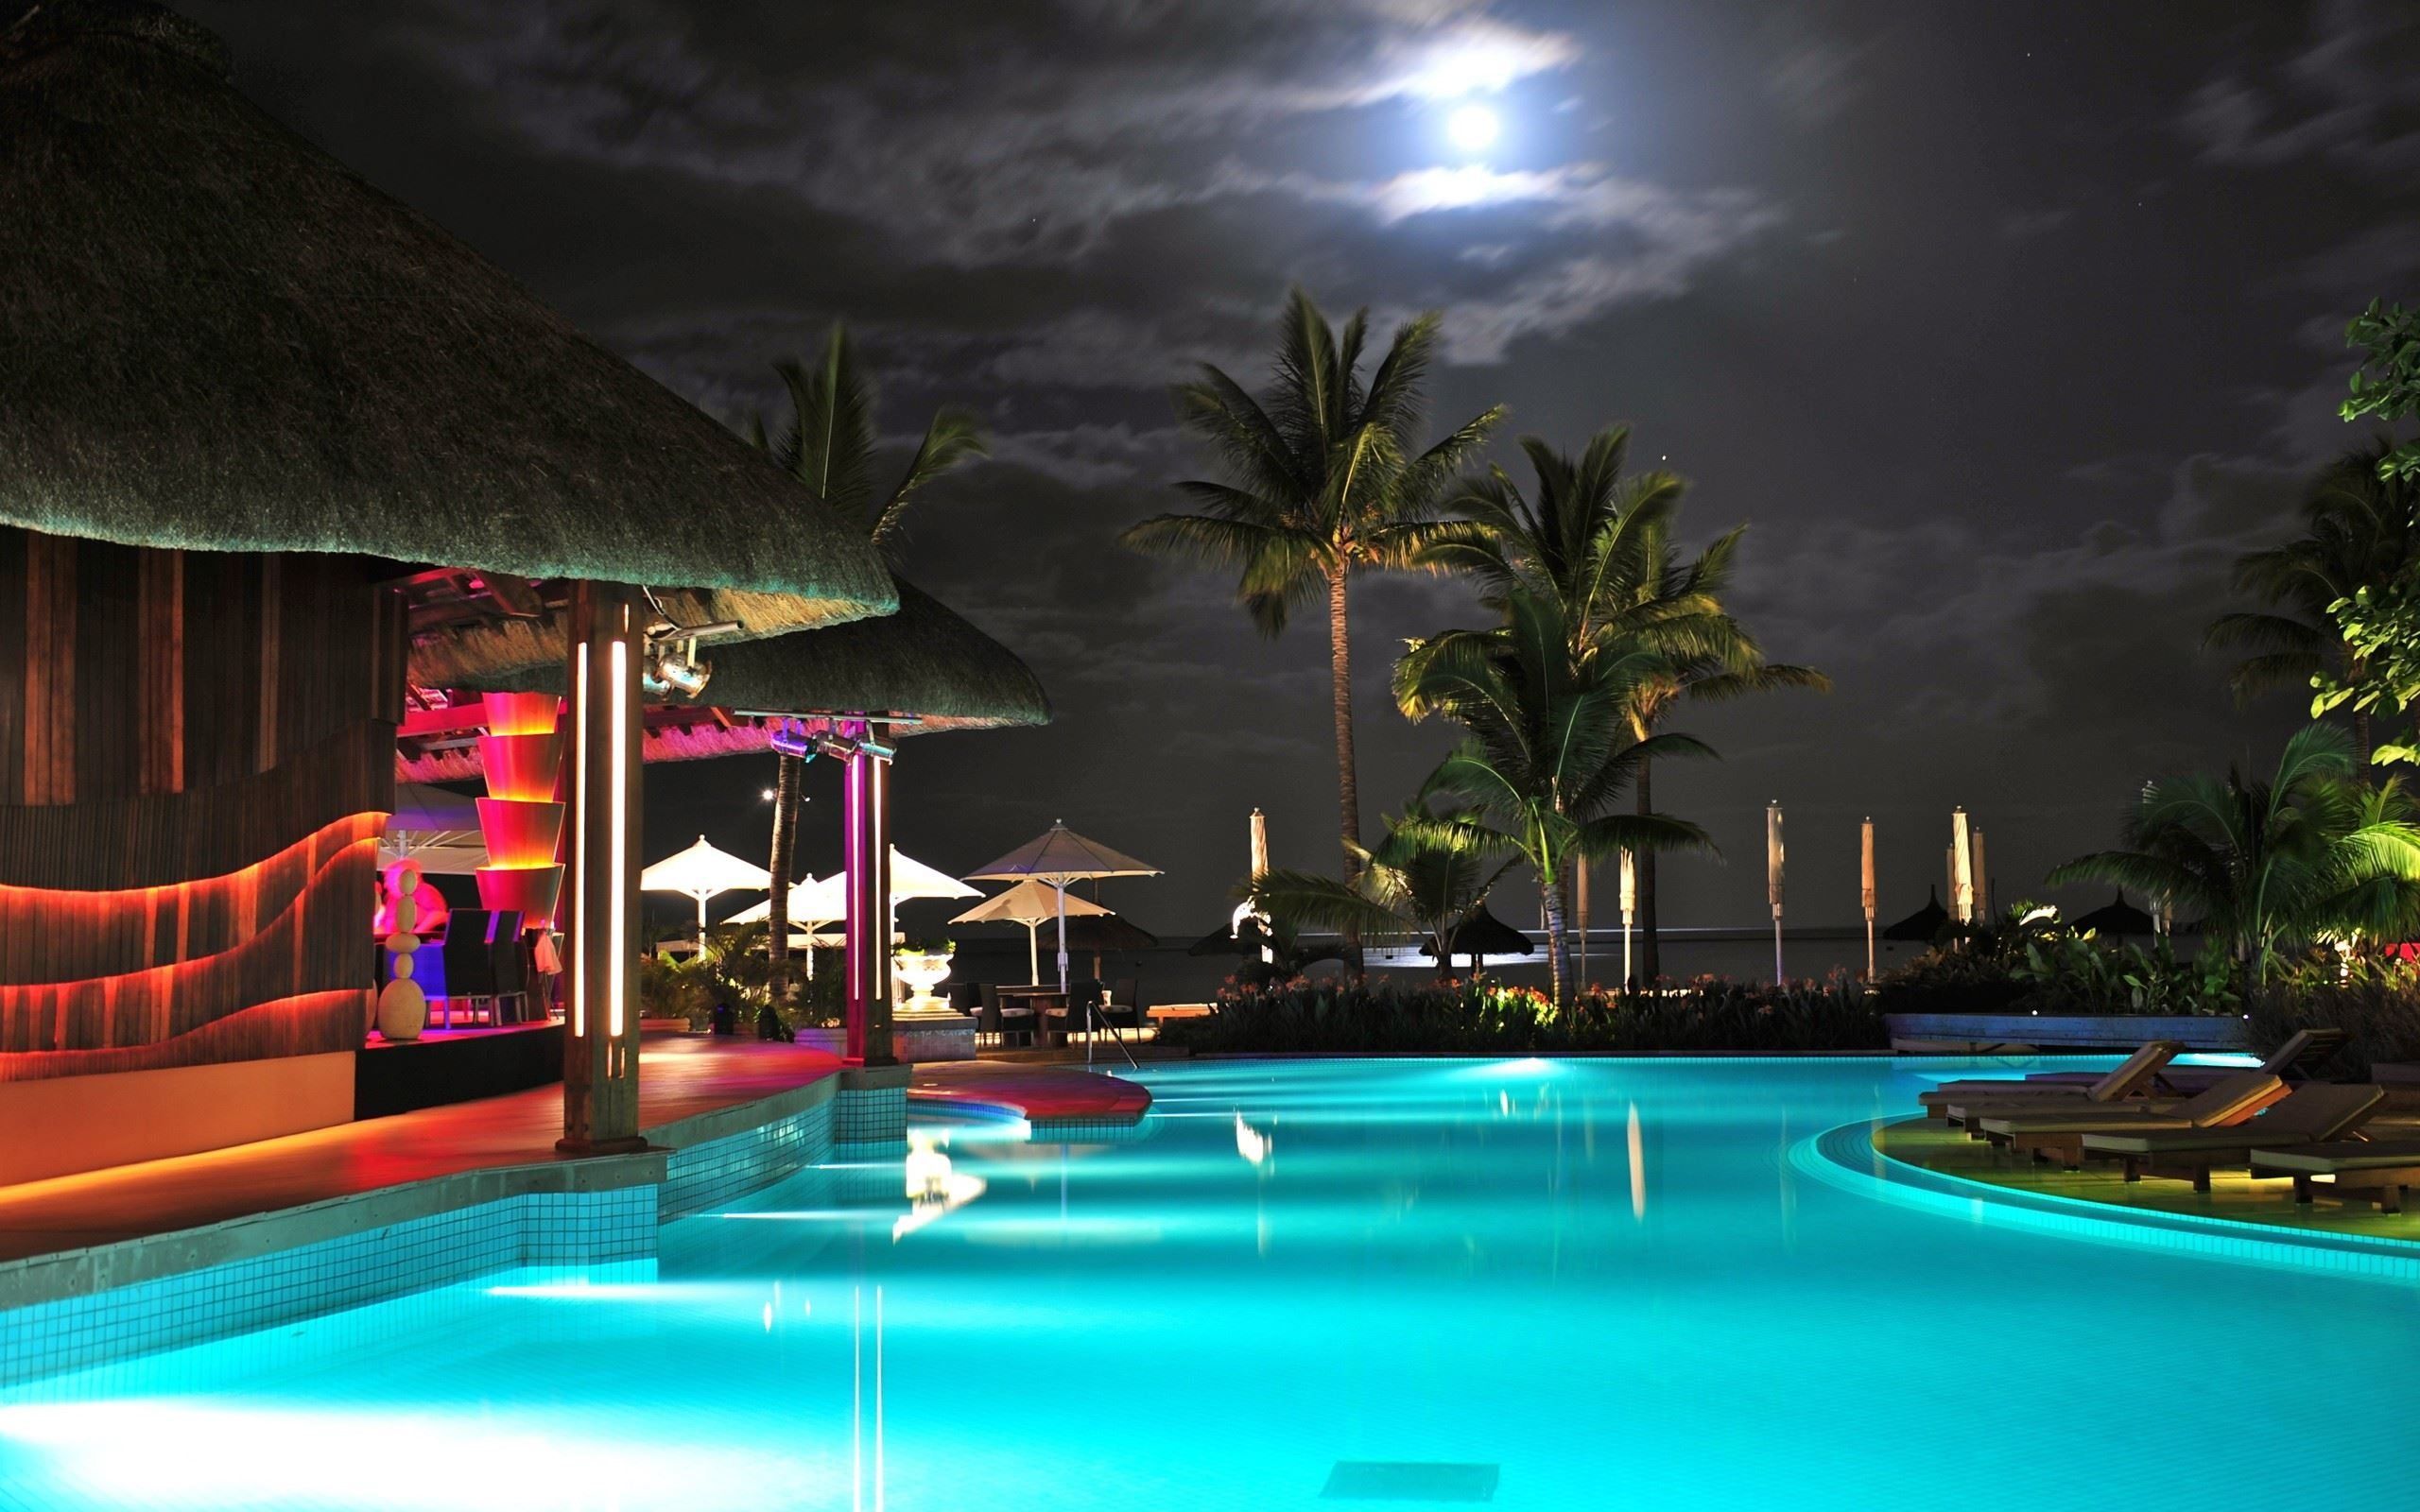 luxury pools. Luxury Resort Pool Wallpaper Picture Photo Image. Pool at night, Luxury pools, Luxury pool